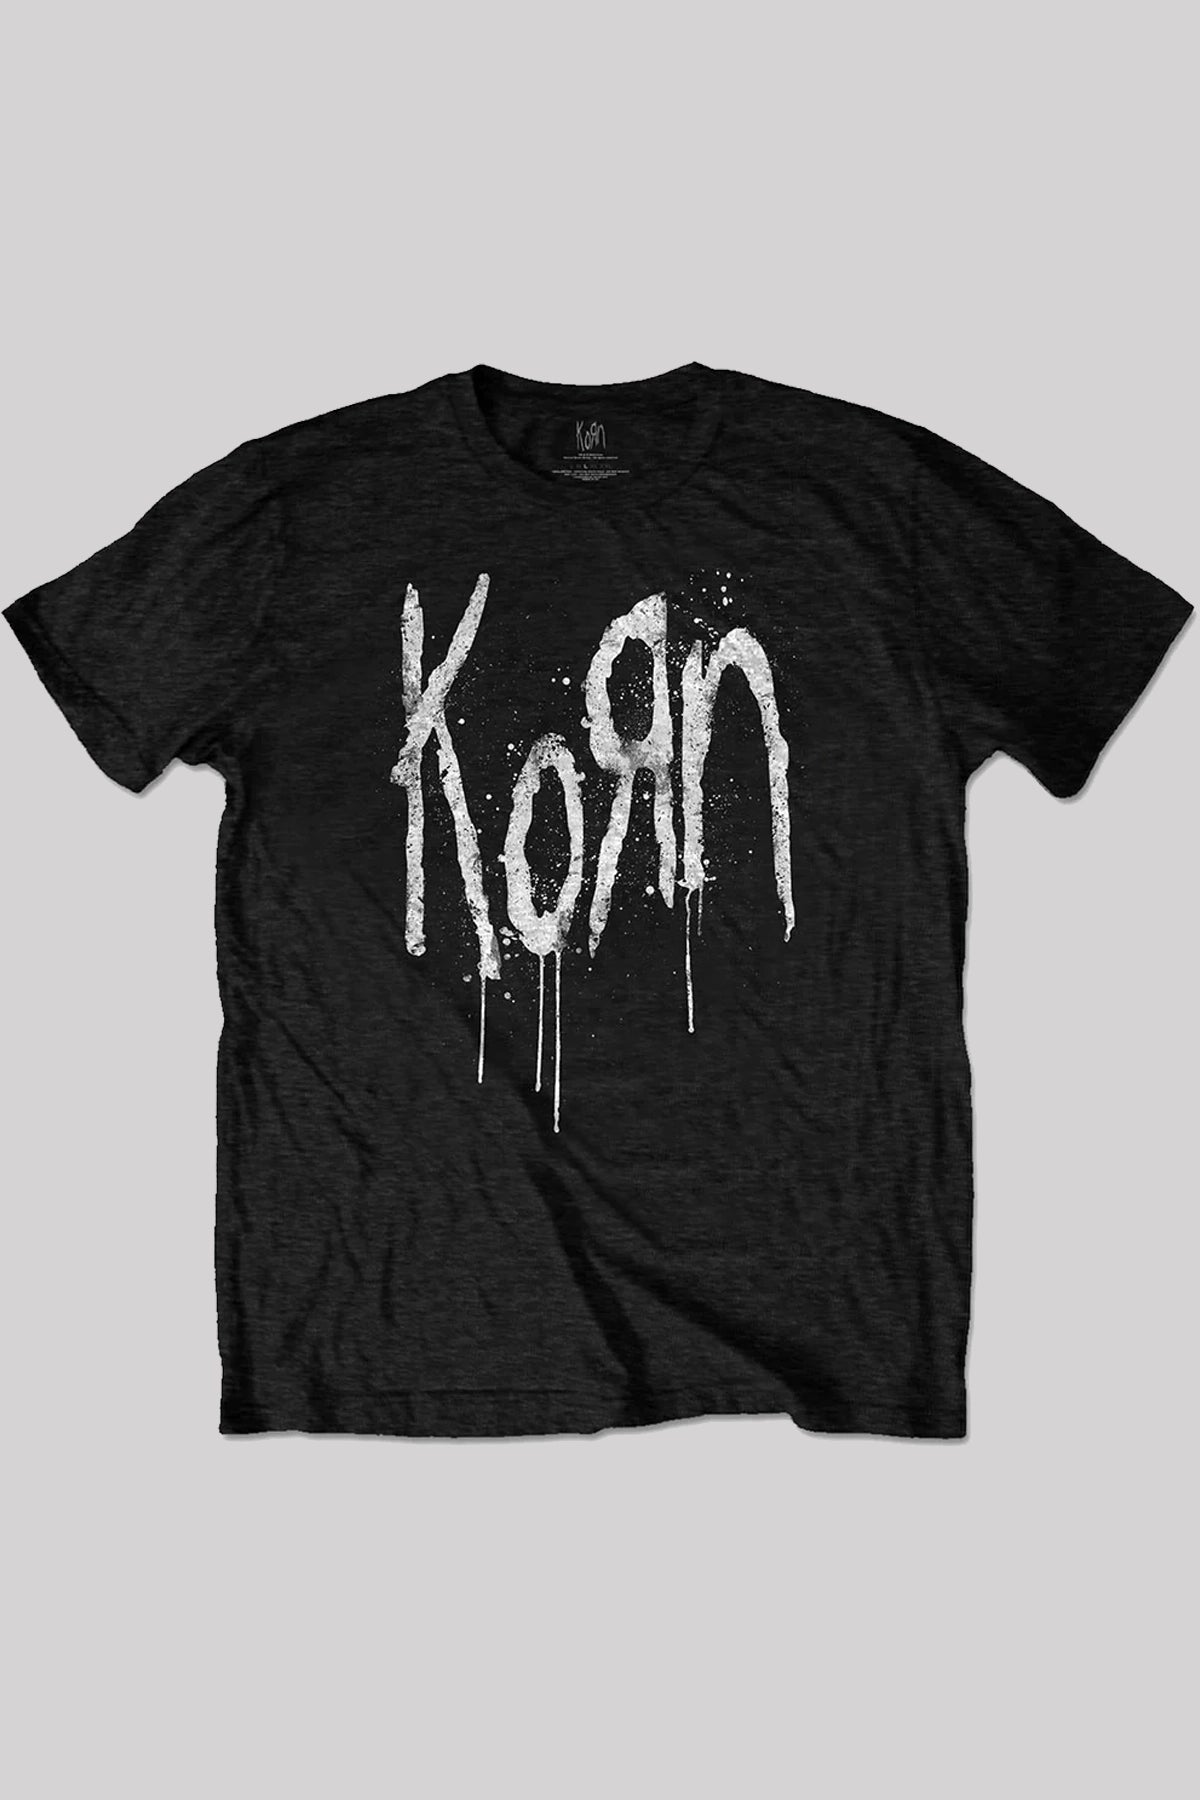 Korn Still A Freak Unisex T-Shirt